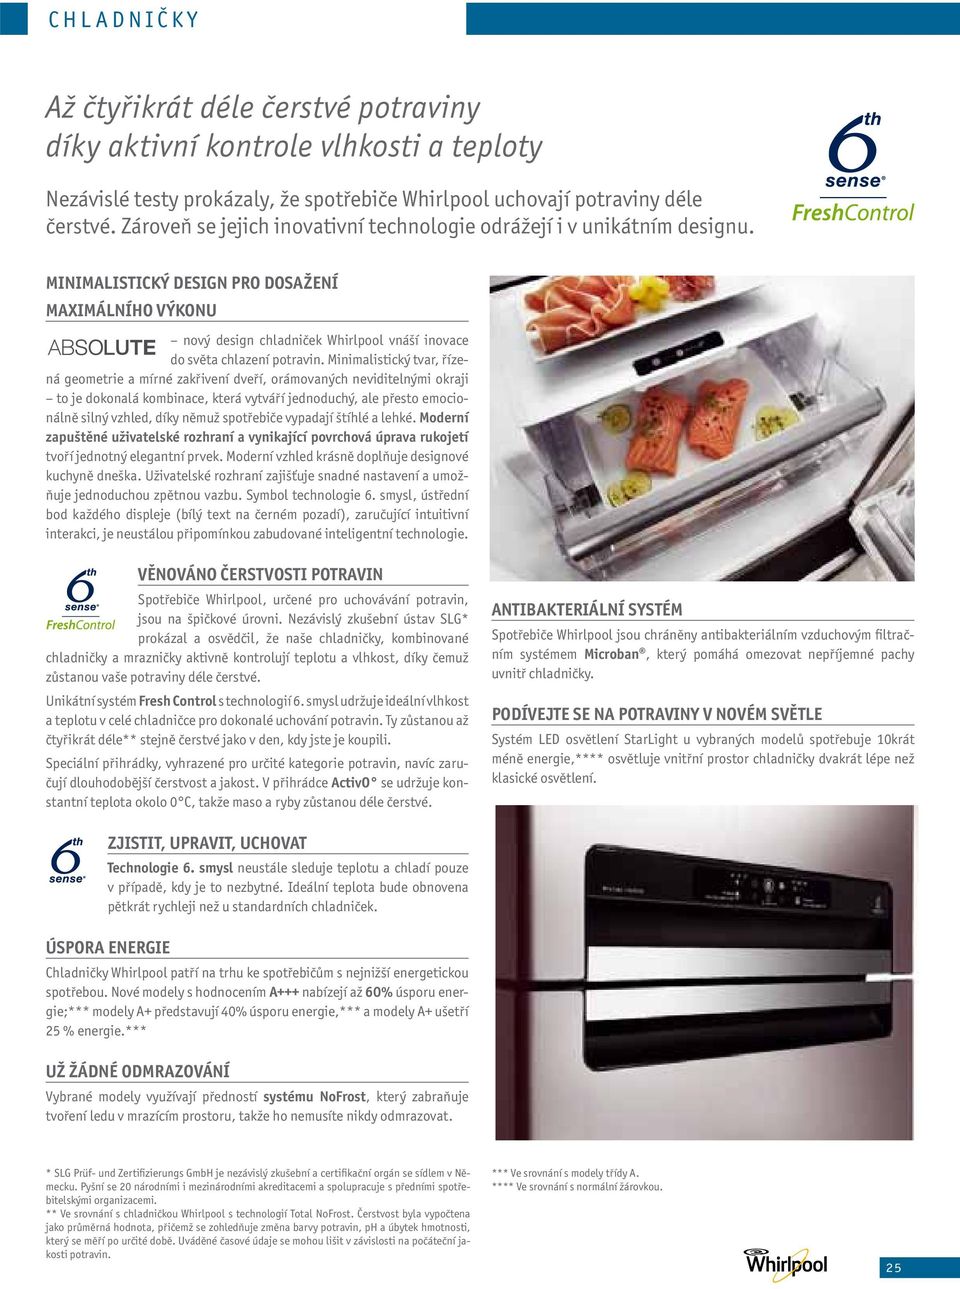 MINIMALISTICKÝ DESIGN PRO DOSAŽENÍ MAXIMÁLNÍHO VÝKONU nový design chladniček Whirlpool vnáší inovace do světa chlazení potravin.